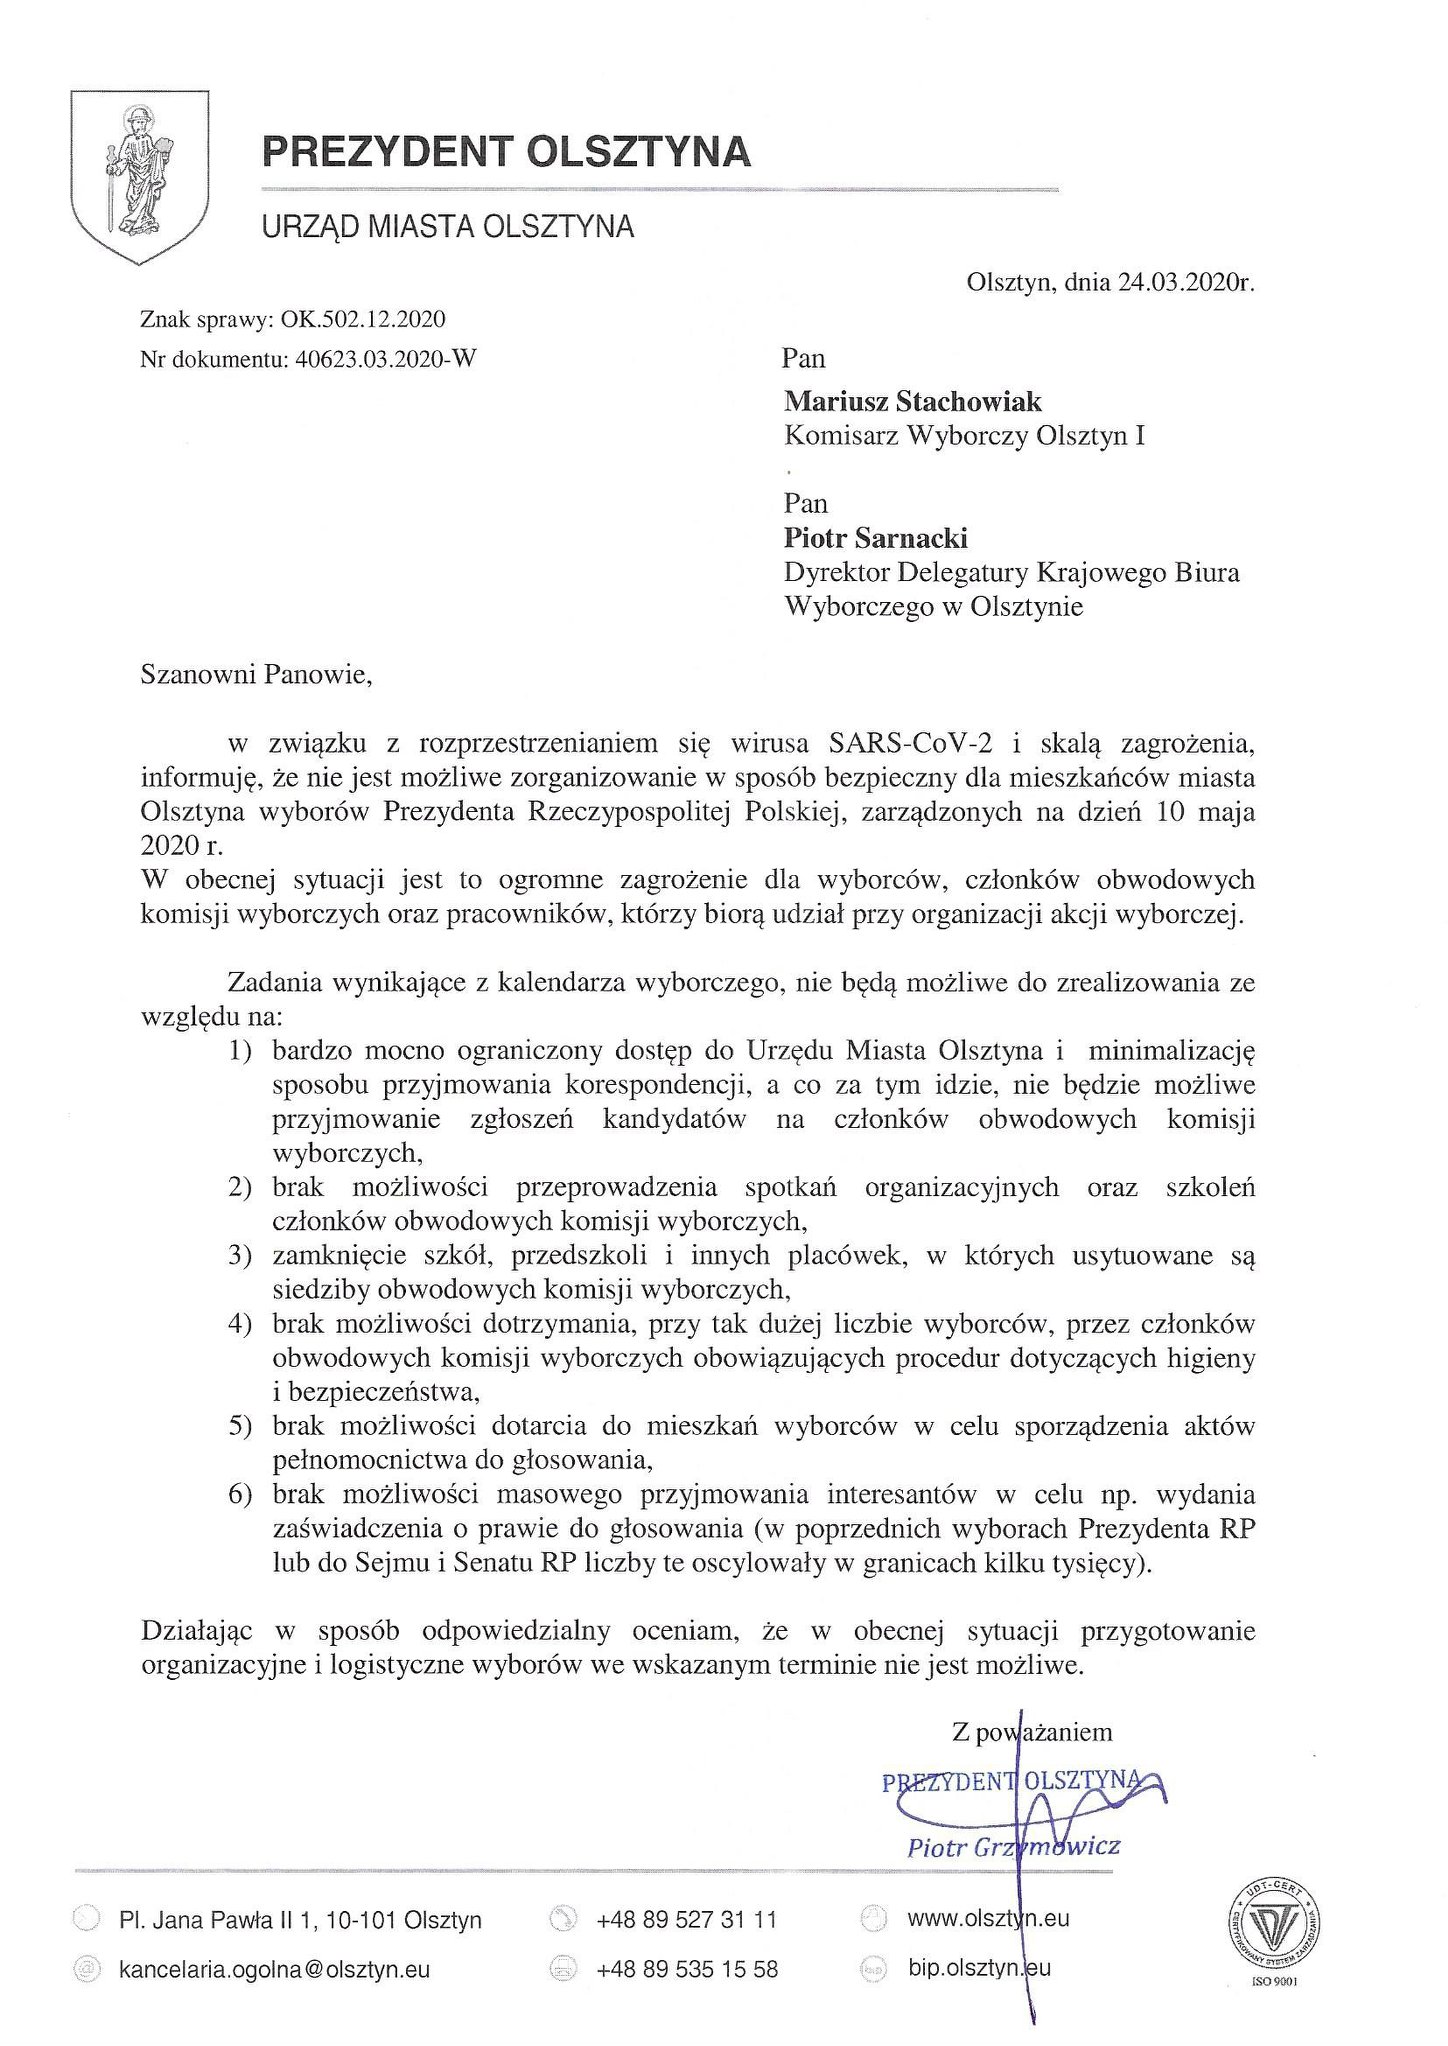 Prezydent Olsztyna chce zmiany terminu wyborów